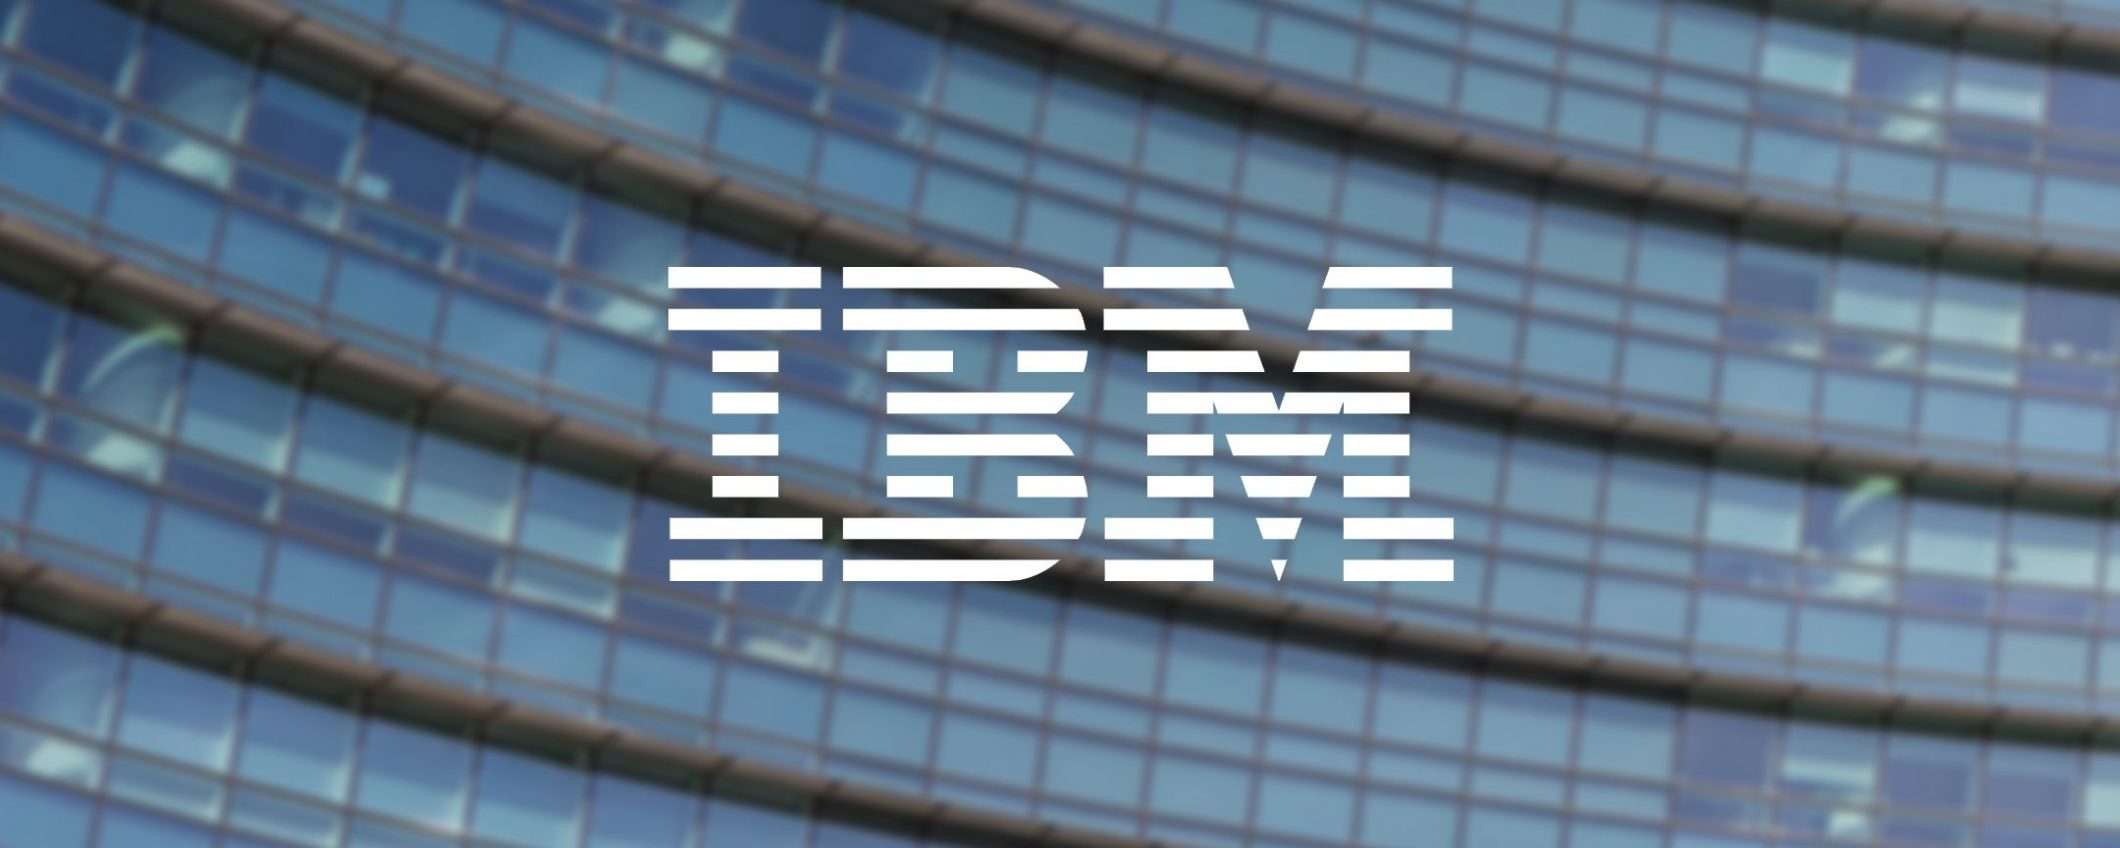 IBM: no a riconoscimento facciale e sorveglianza